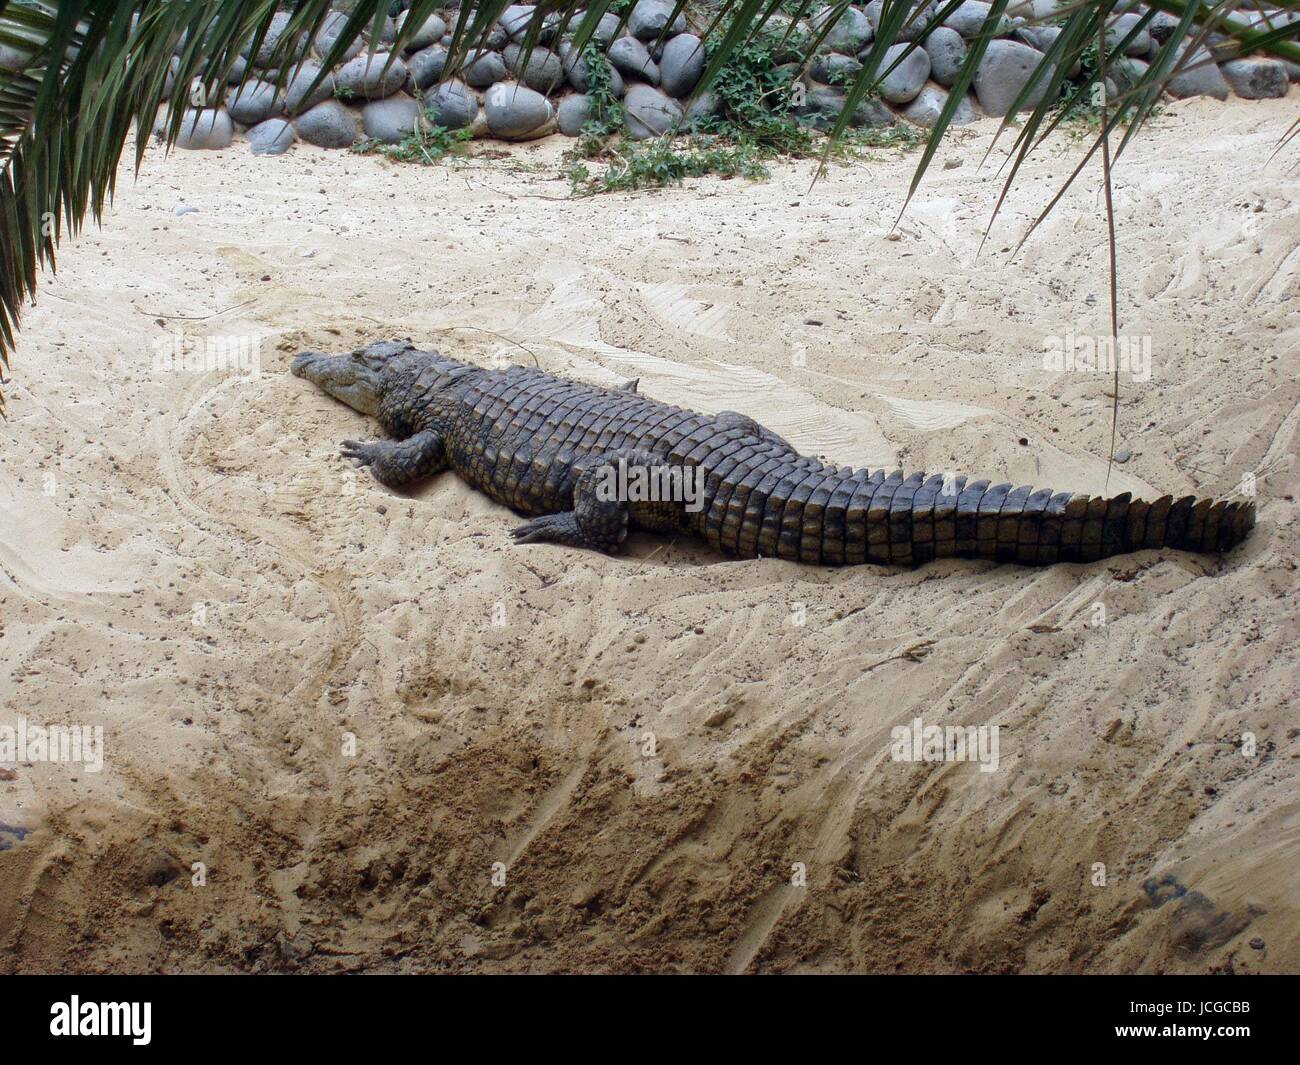 Aligator,krokodil,krokodile,amphibien,reptilien,tiere,tier Foto de stock